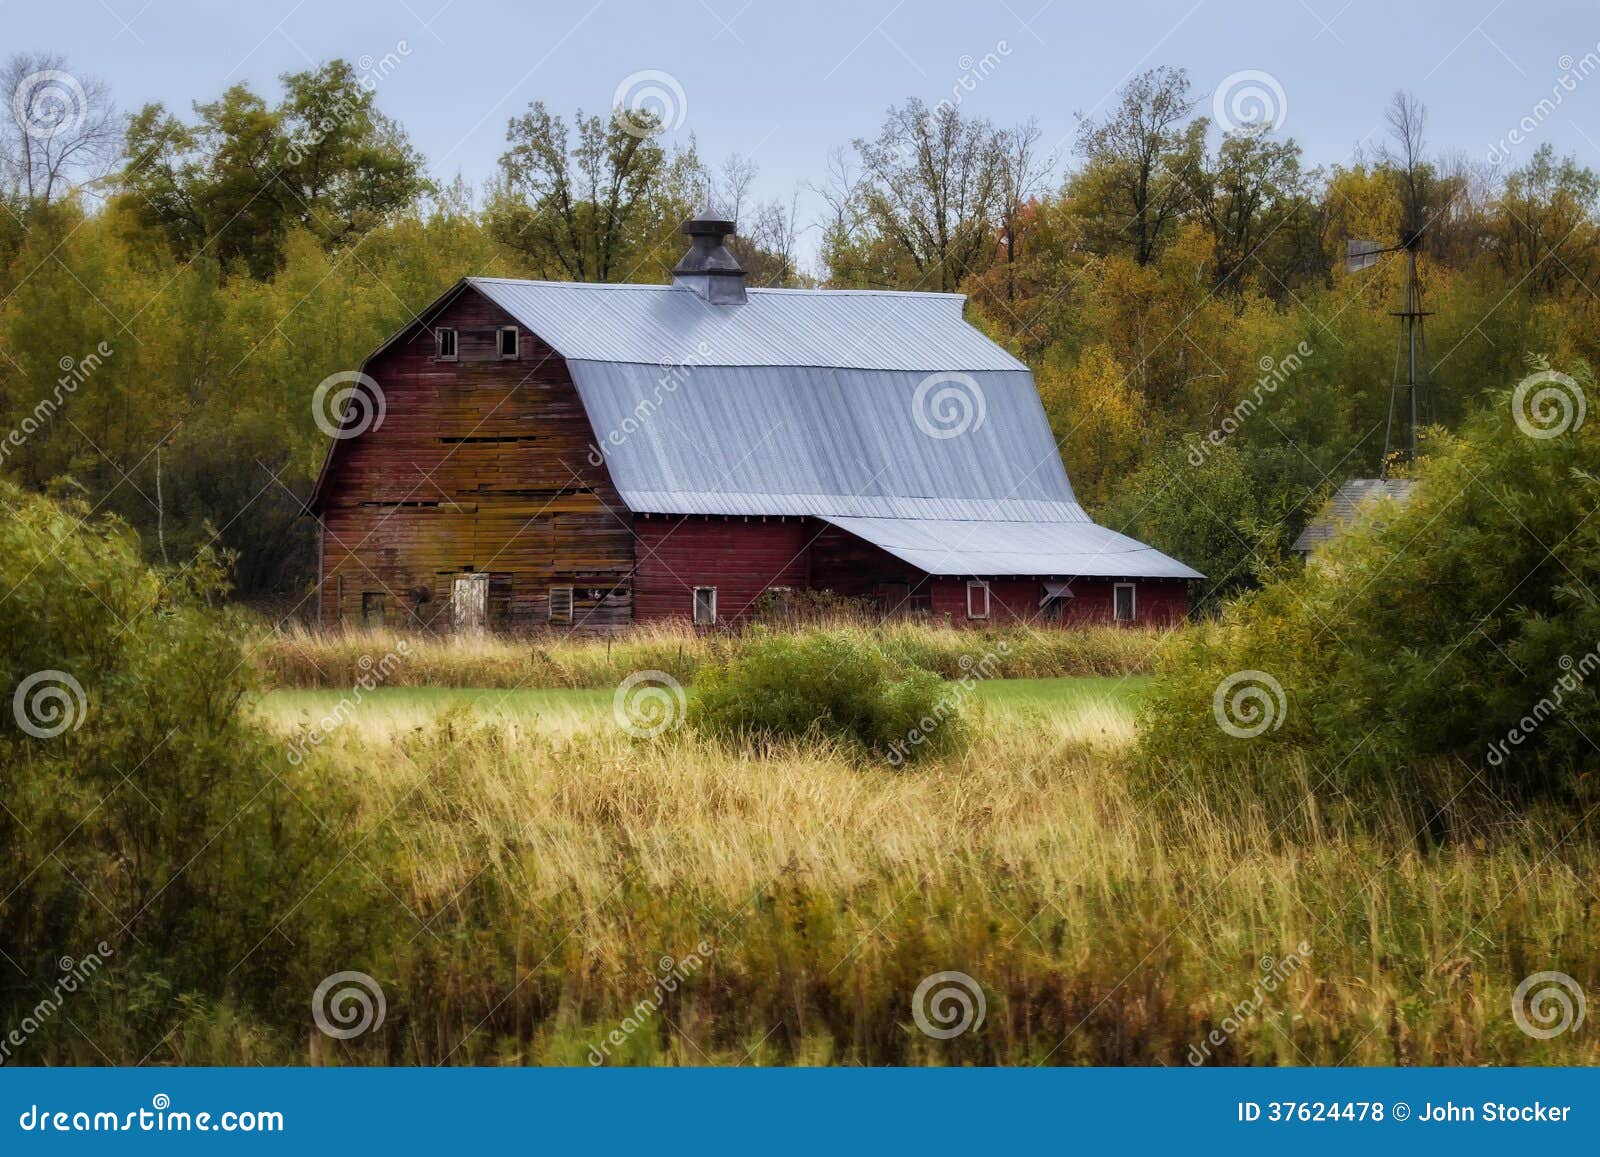 old barn - 1